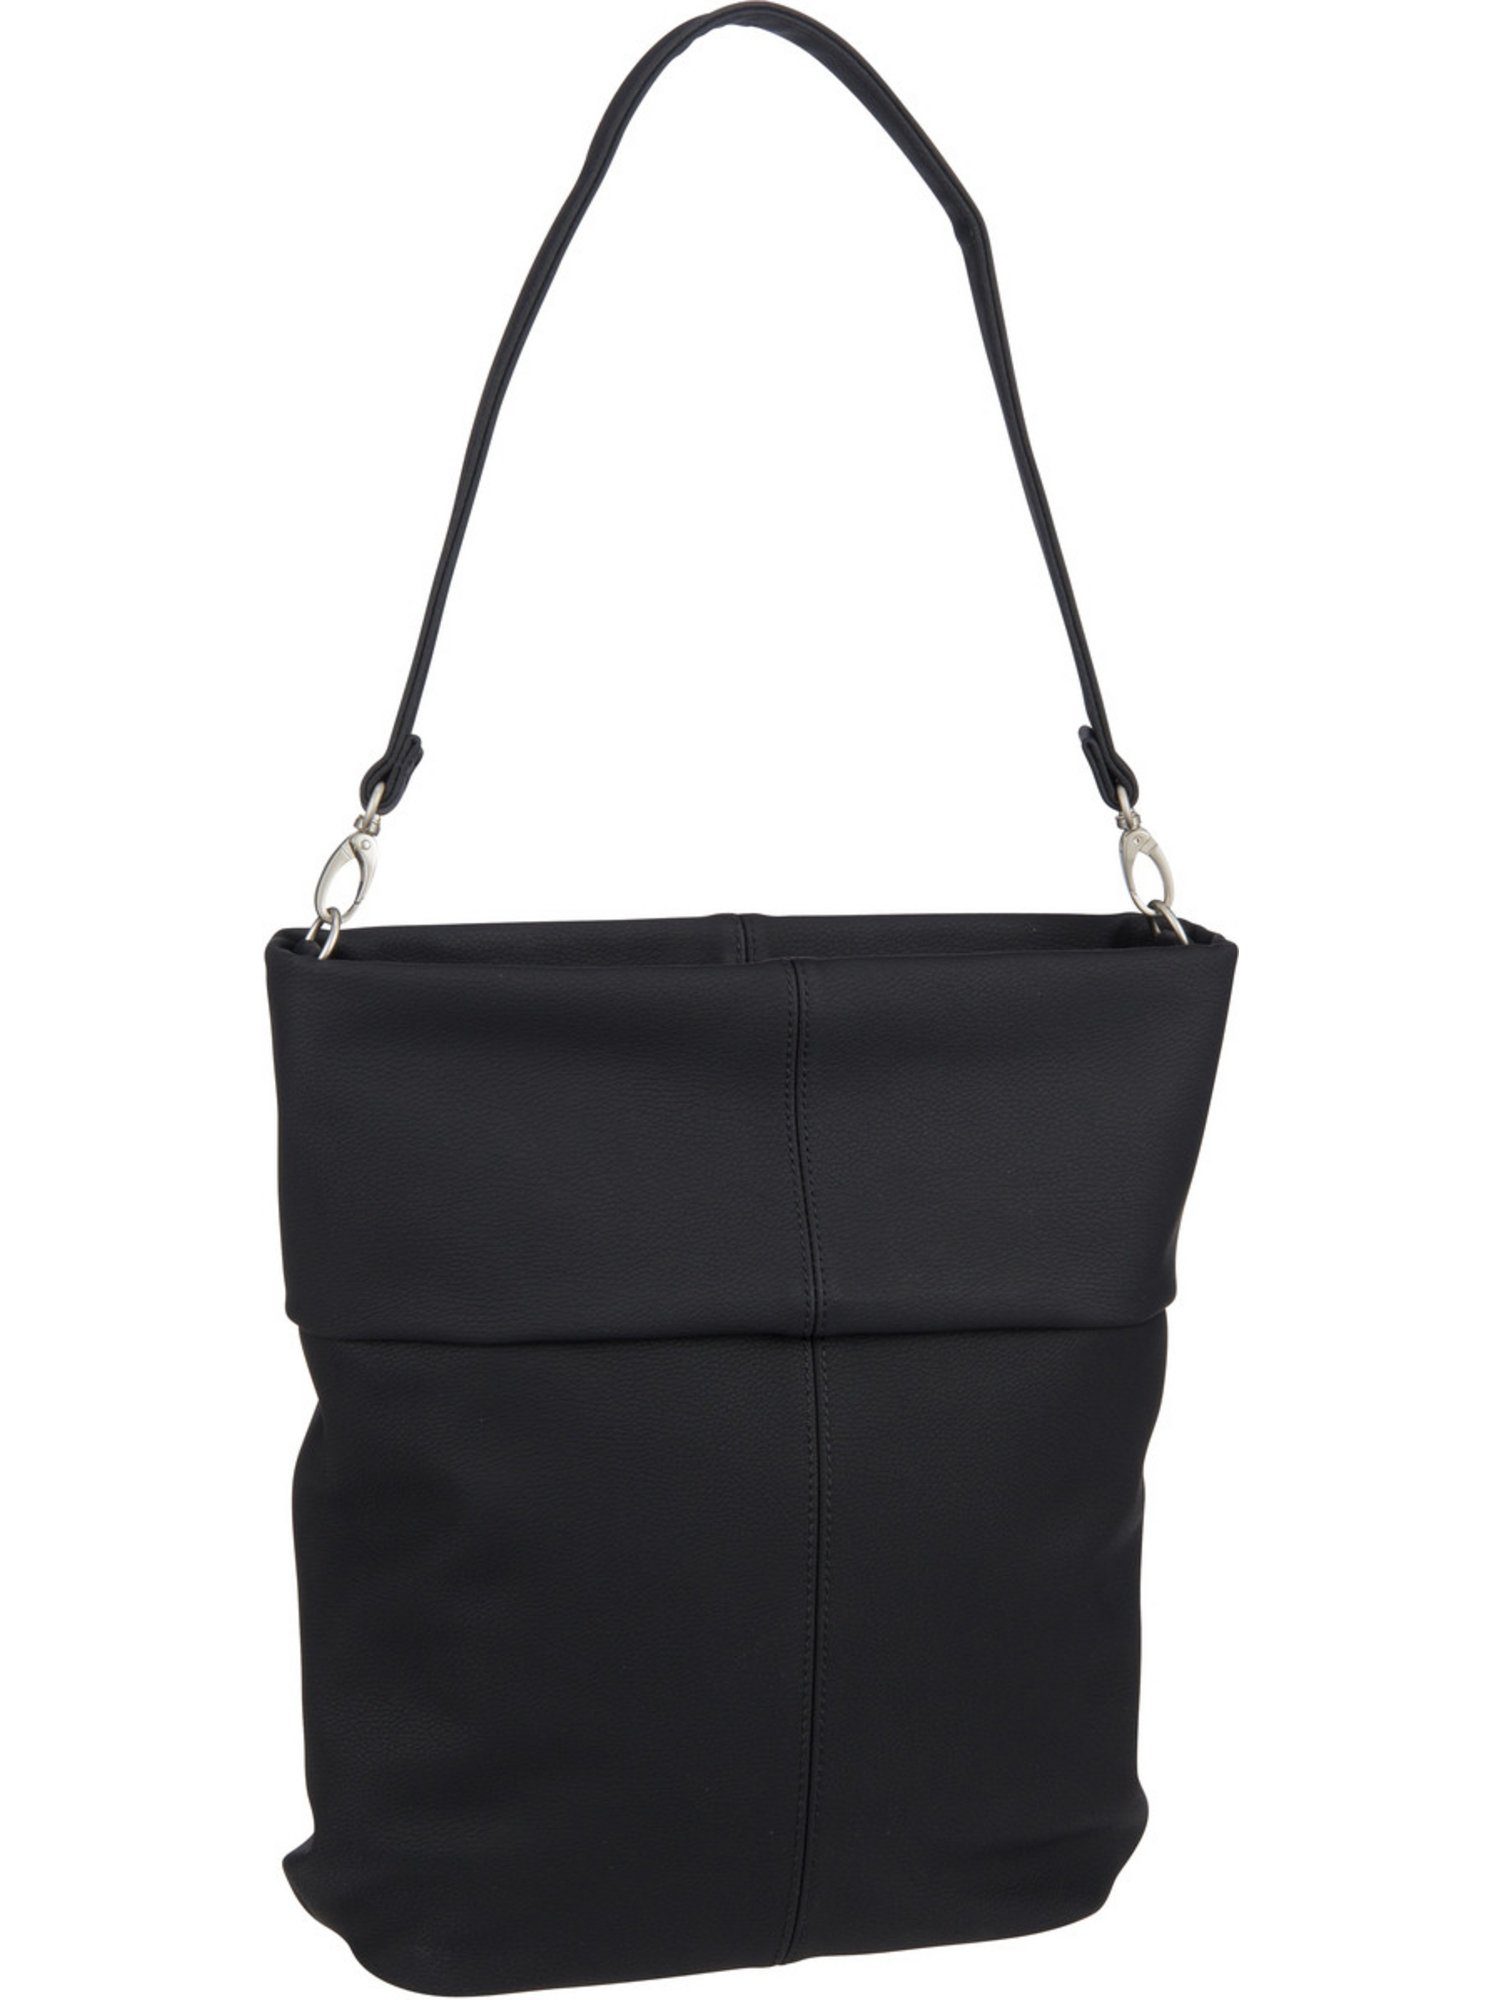 Zwei M12, Handtasche Hobo Mademoiselle Bag Nubuk/Black